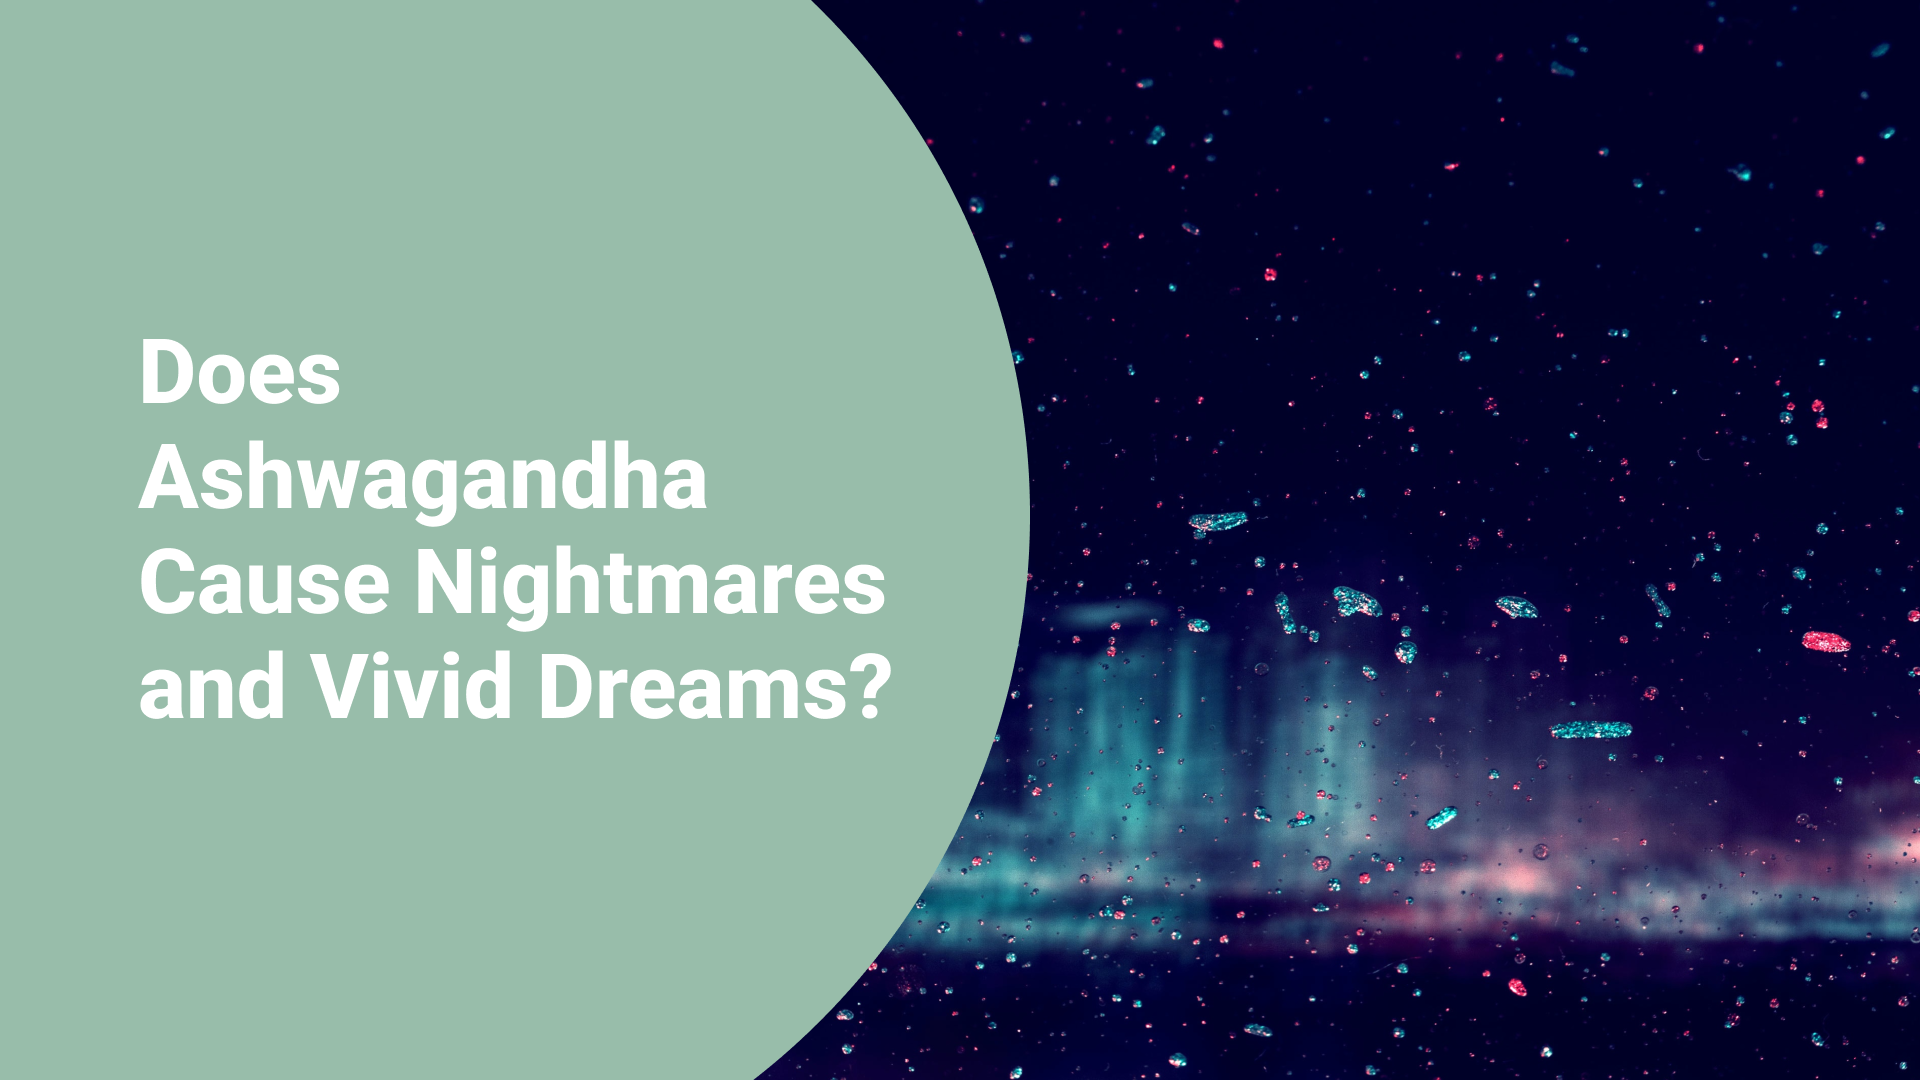 Does Ashwagandha Cause Nightmares and Vivid Dreams?